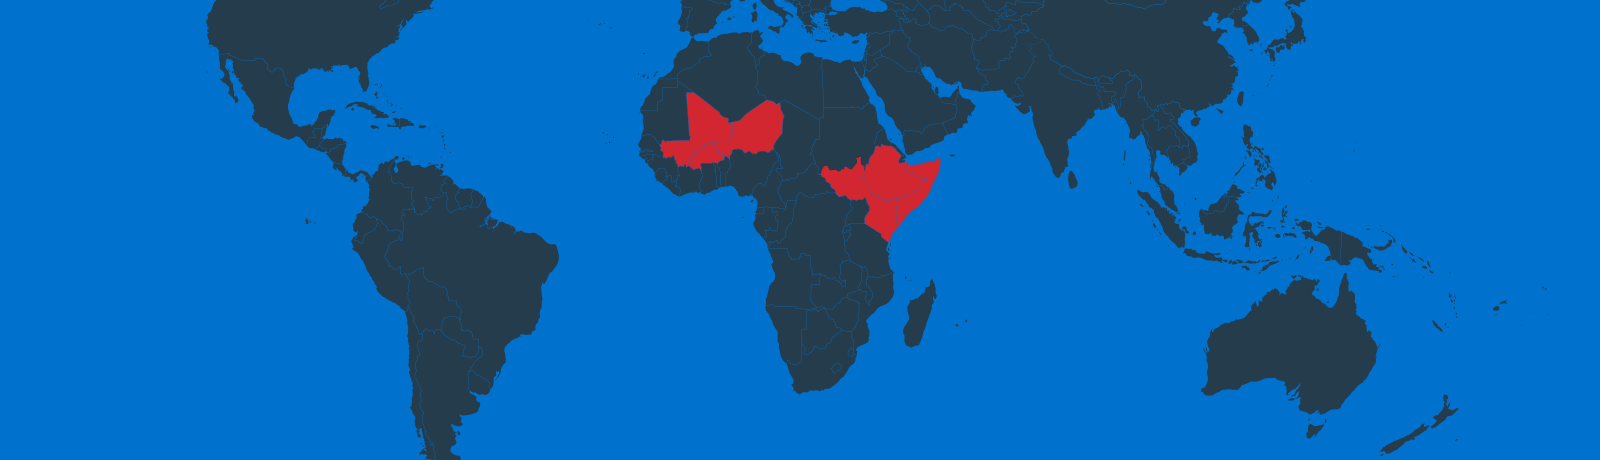 アフリカ7カ国・食料危機緊急支援